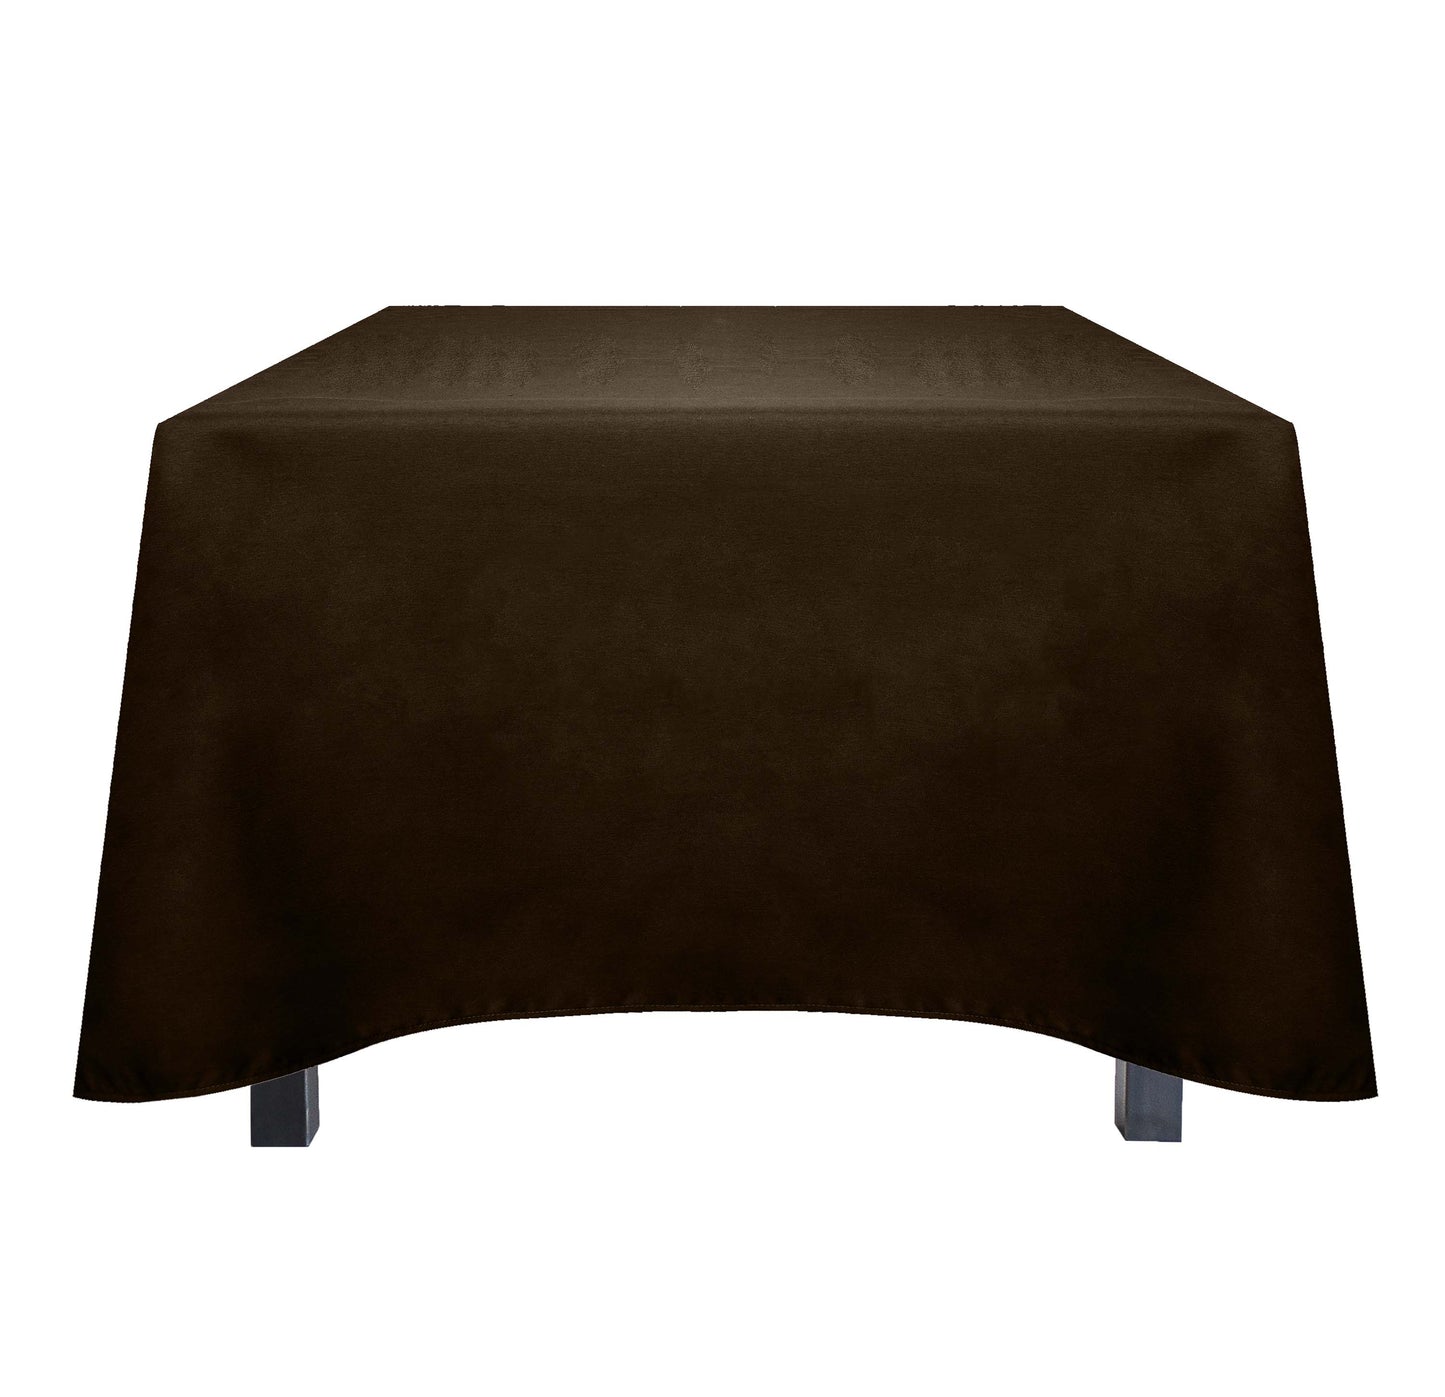 Tablecloth, Omega, 85x85 inch, Square, 24 pcs/pk